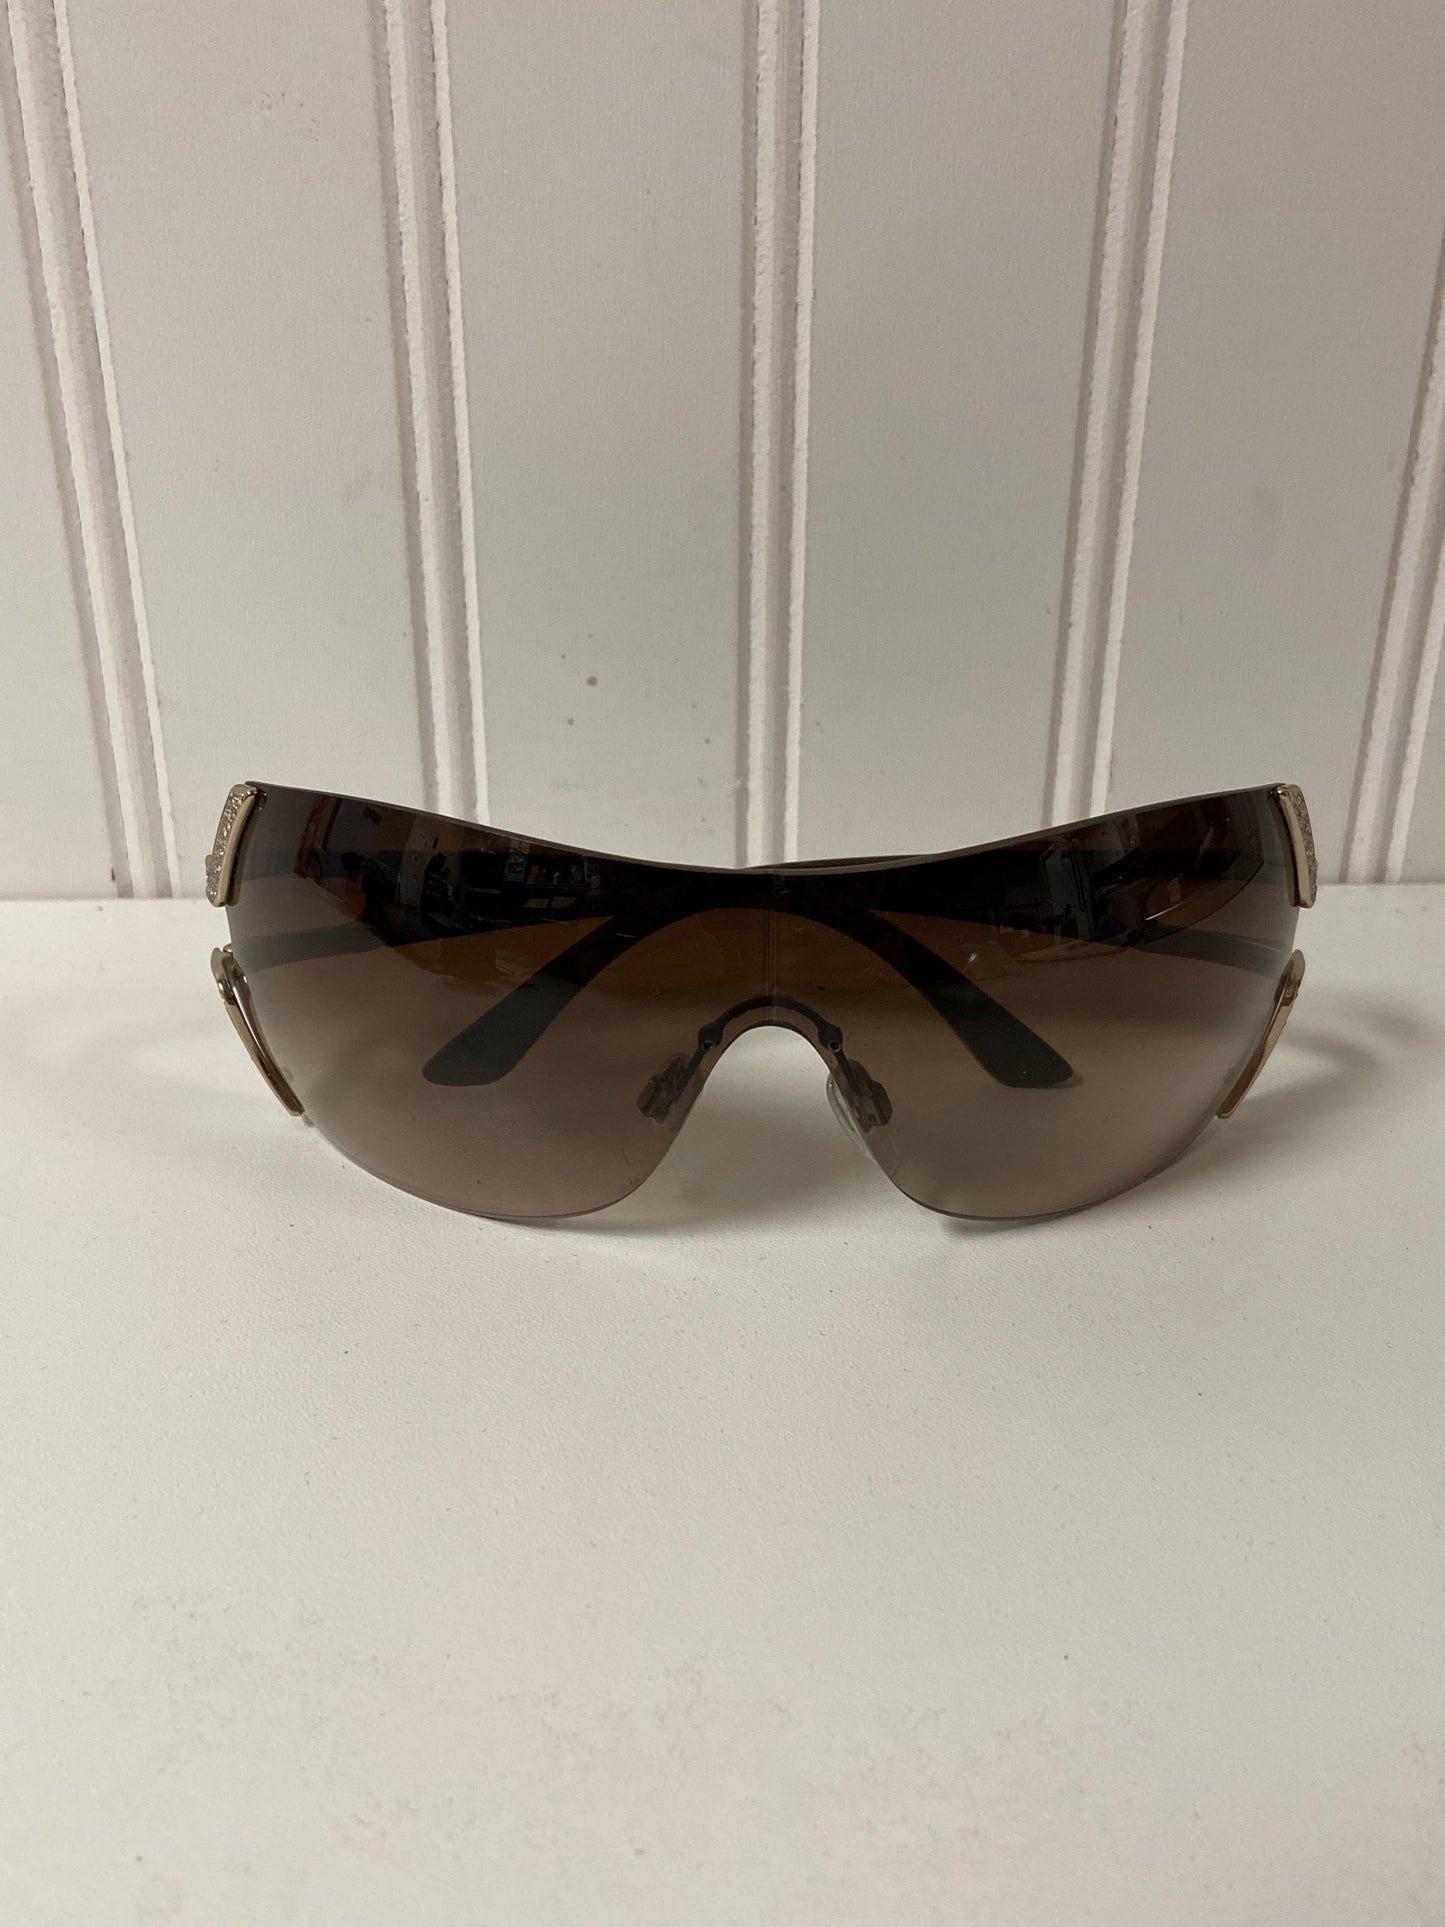 Sunglasses Designer Bvlgari, Size 01 Piece